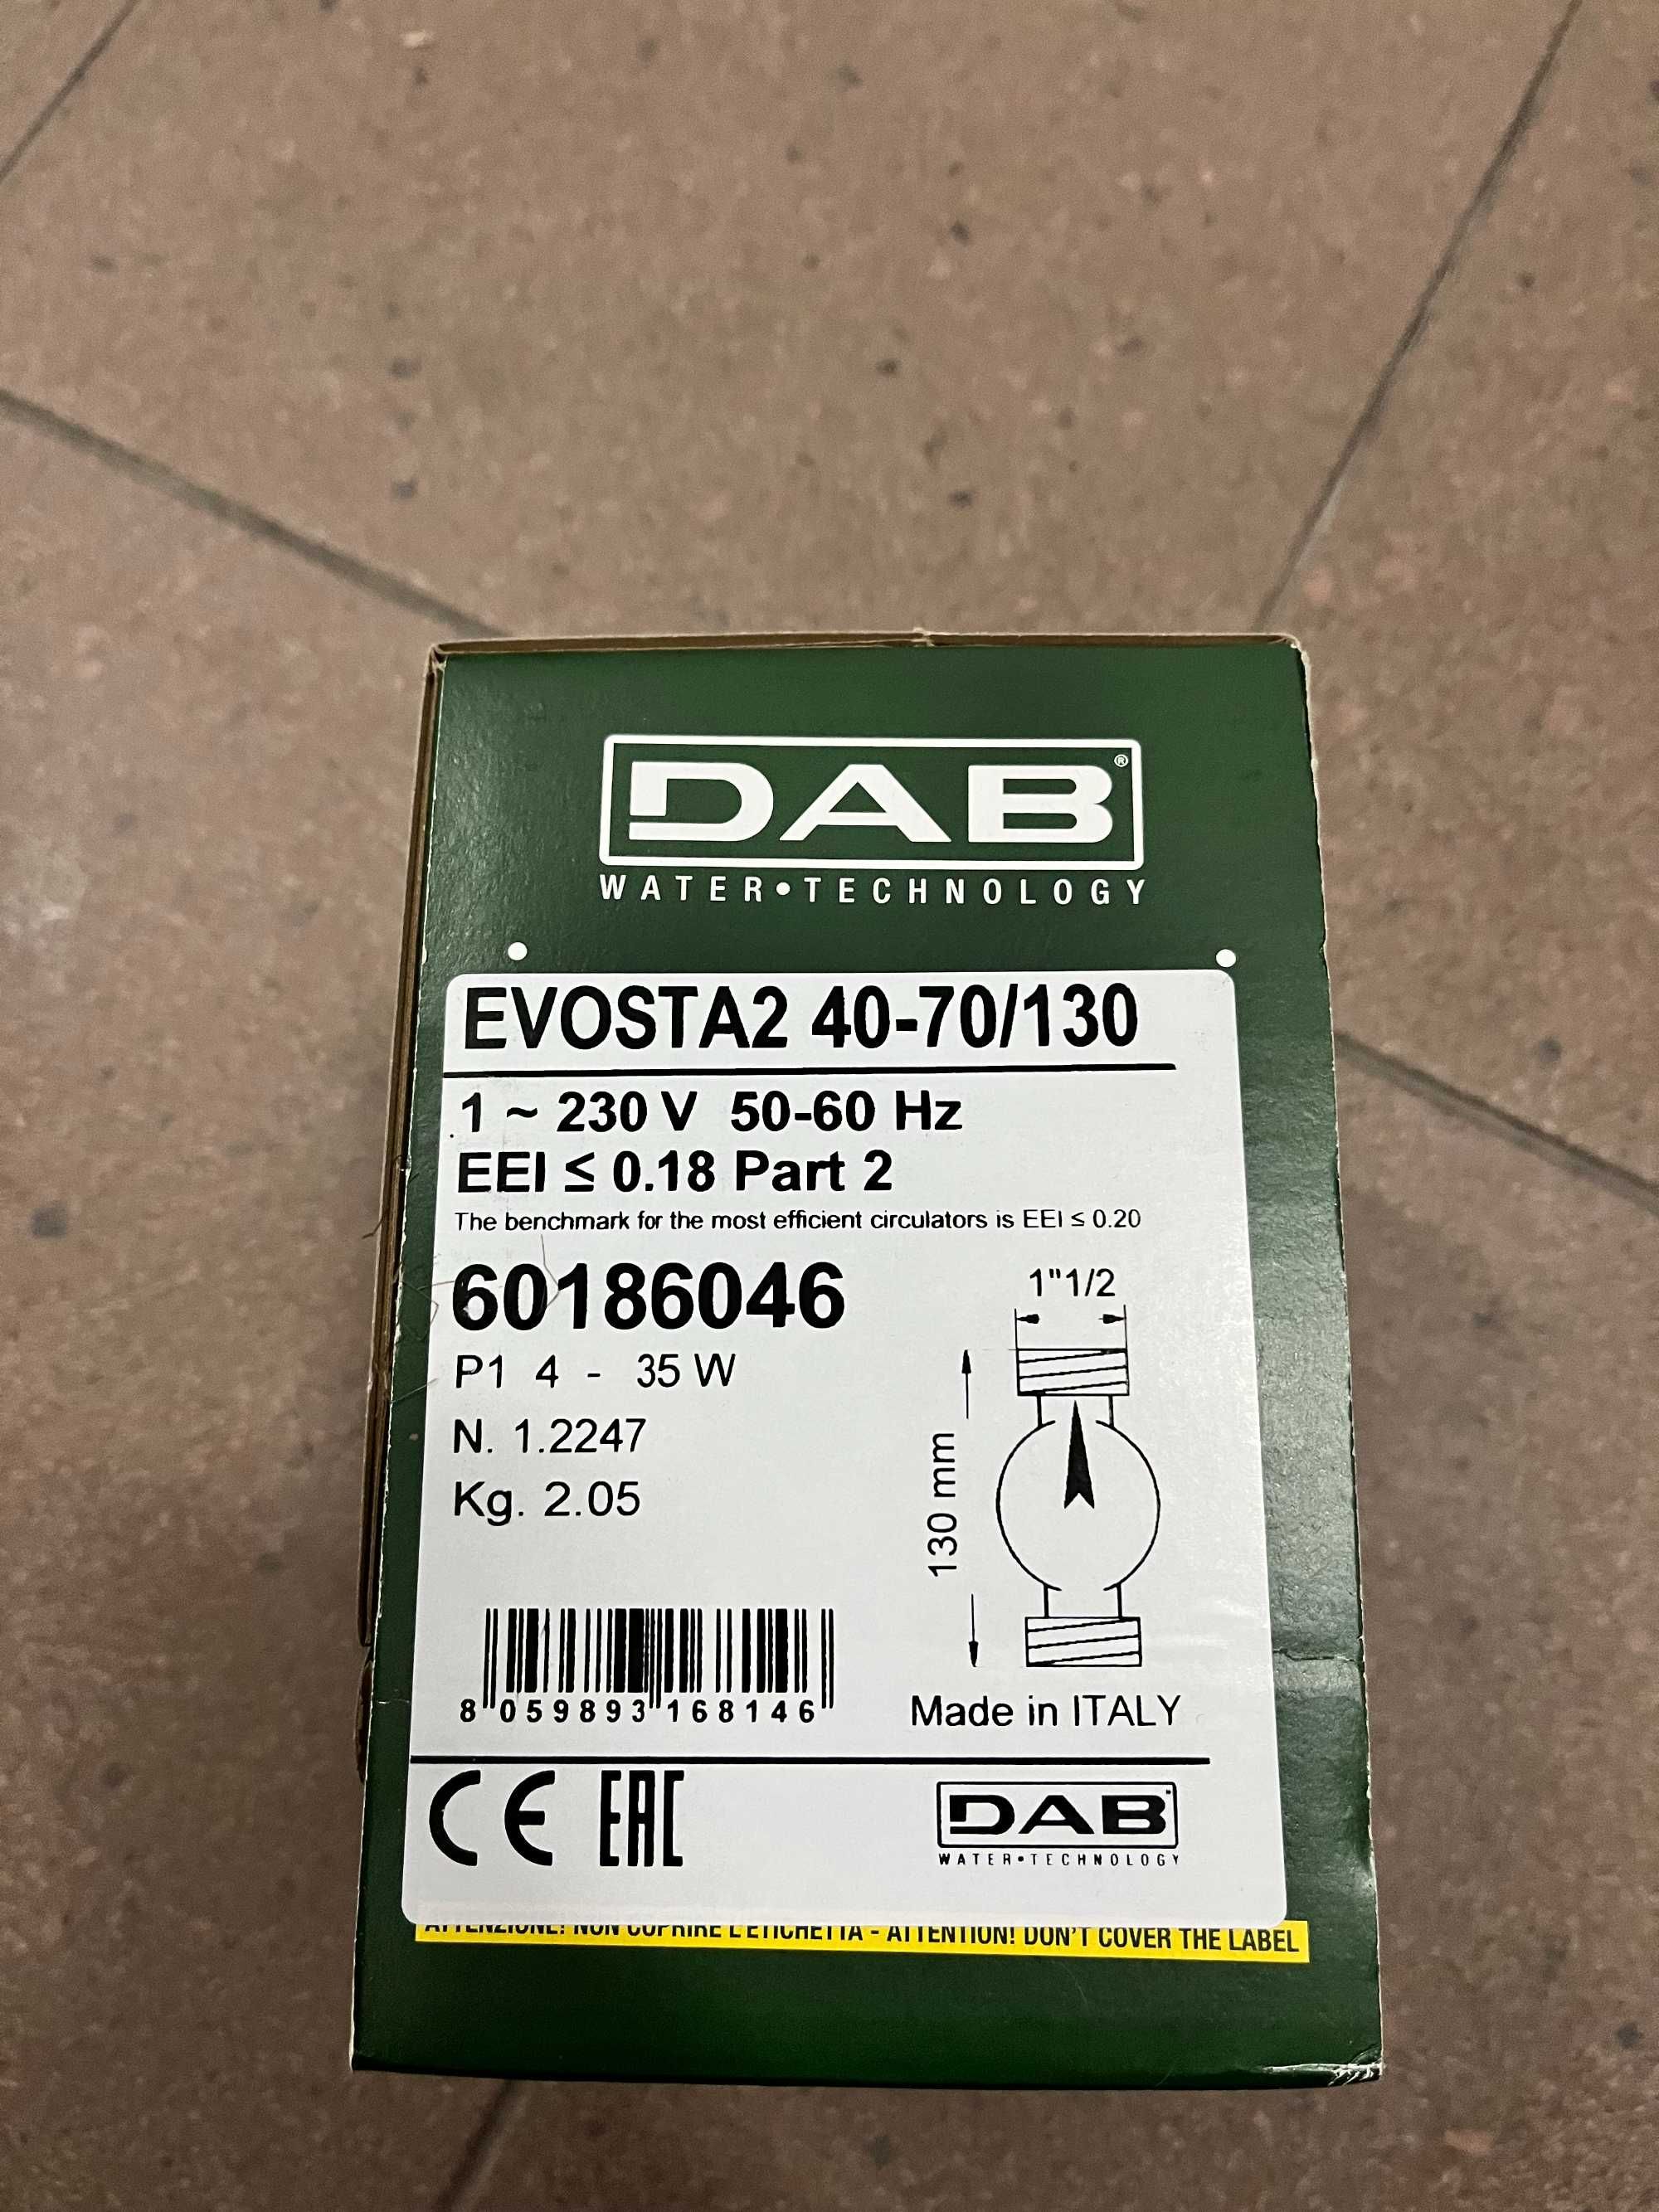 Pompa DAB EVOSTA2 40-70/130 nigdy nieużywany, nieotwierany